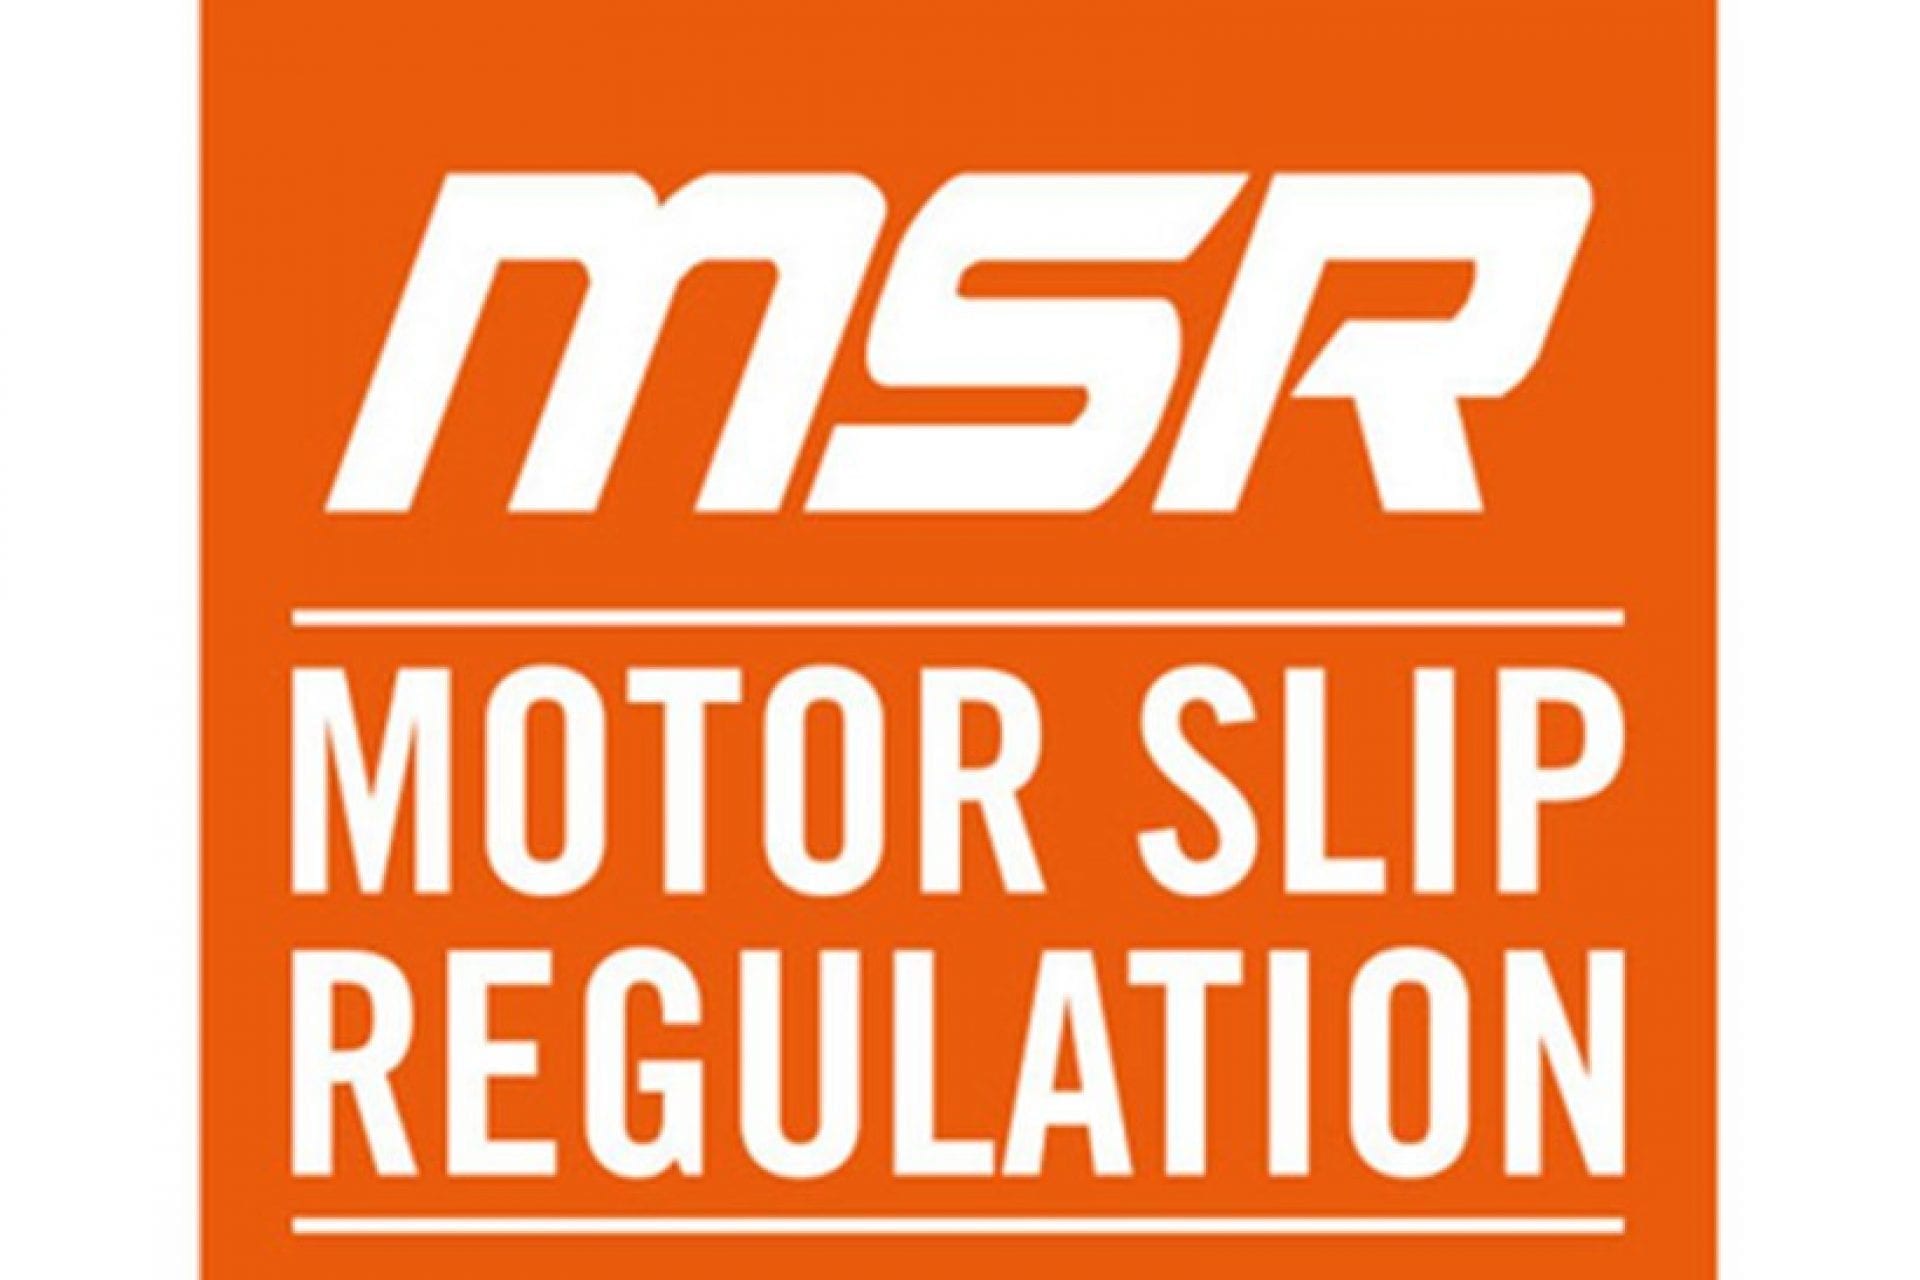 Motor Slip Regulation (MSR)